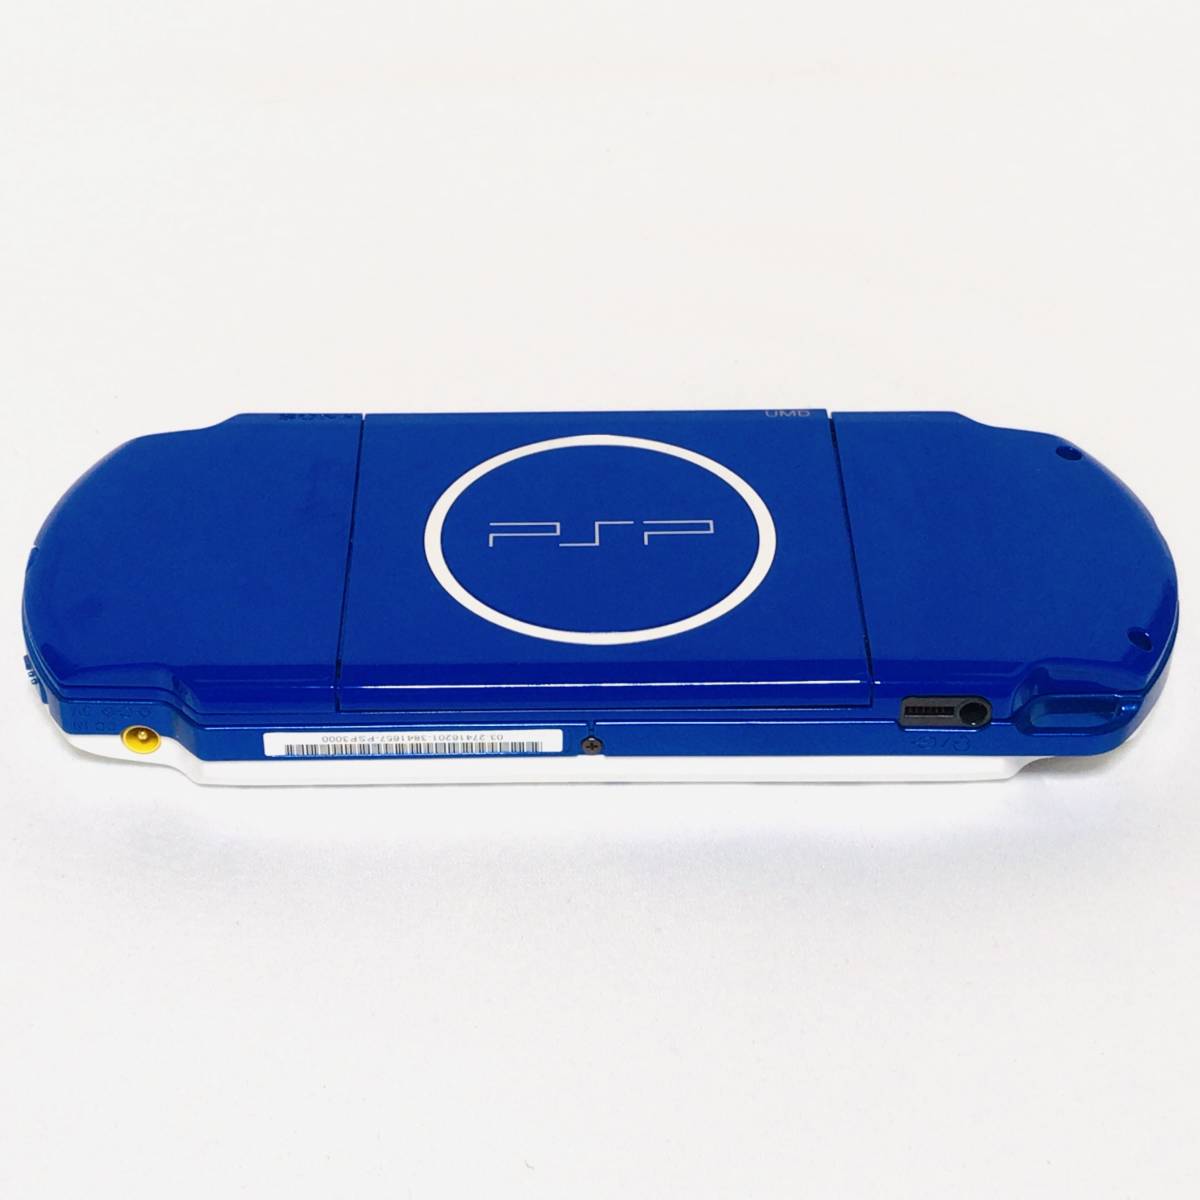 PSP「プレイステーション・ポータブル」バリューパック ホワイト/ブルー(PSPJ-30018) 4GBメモリースティック付き 